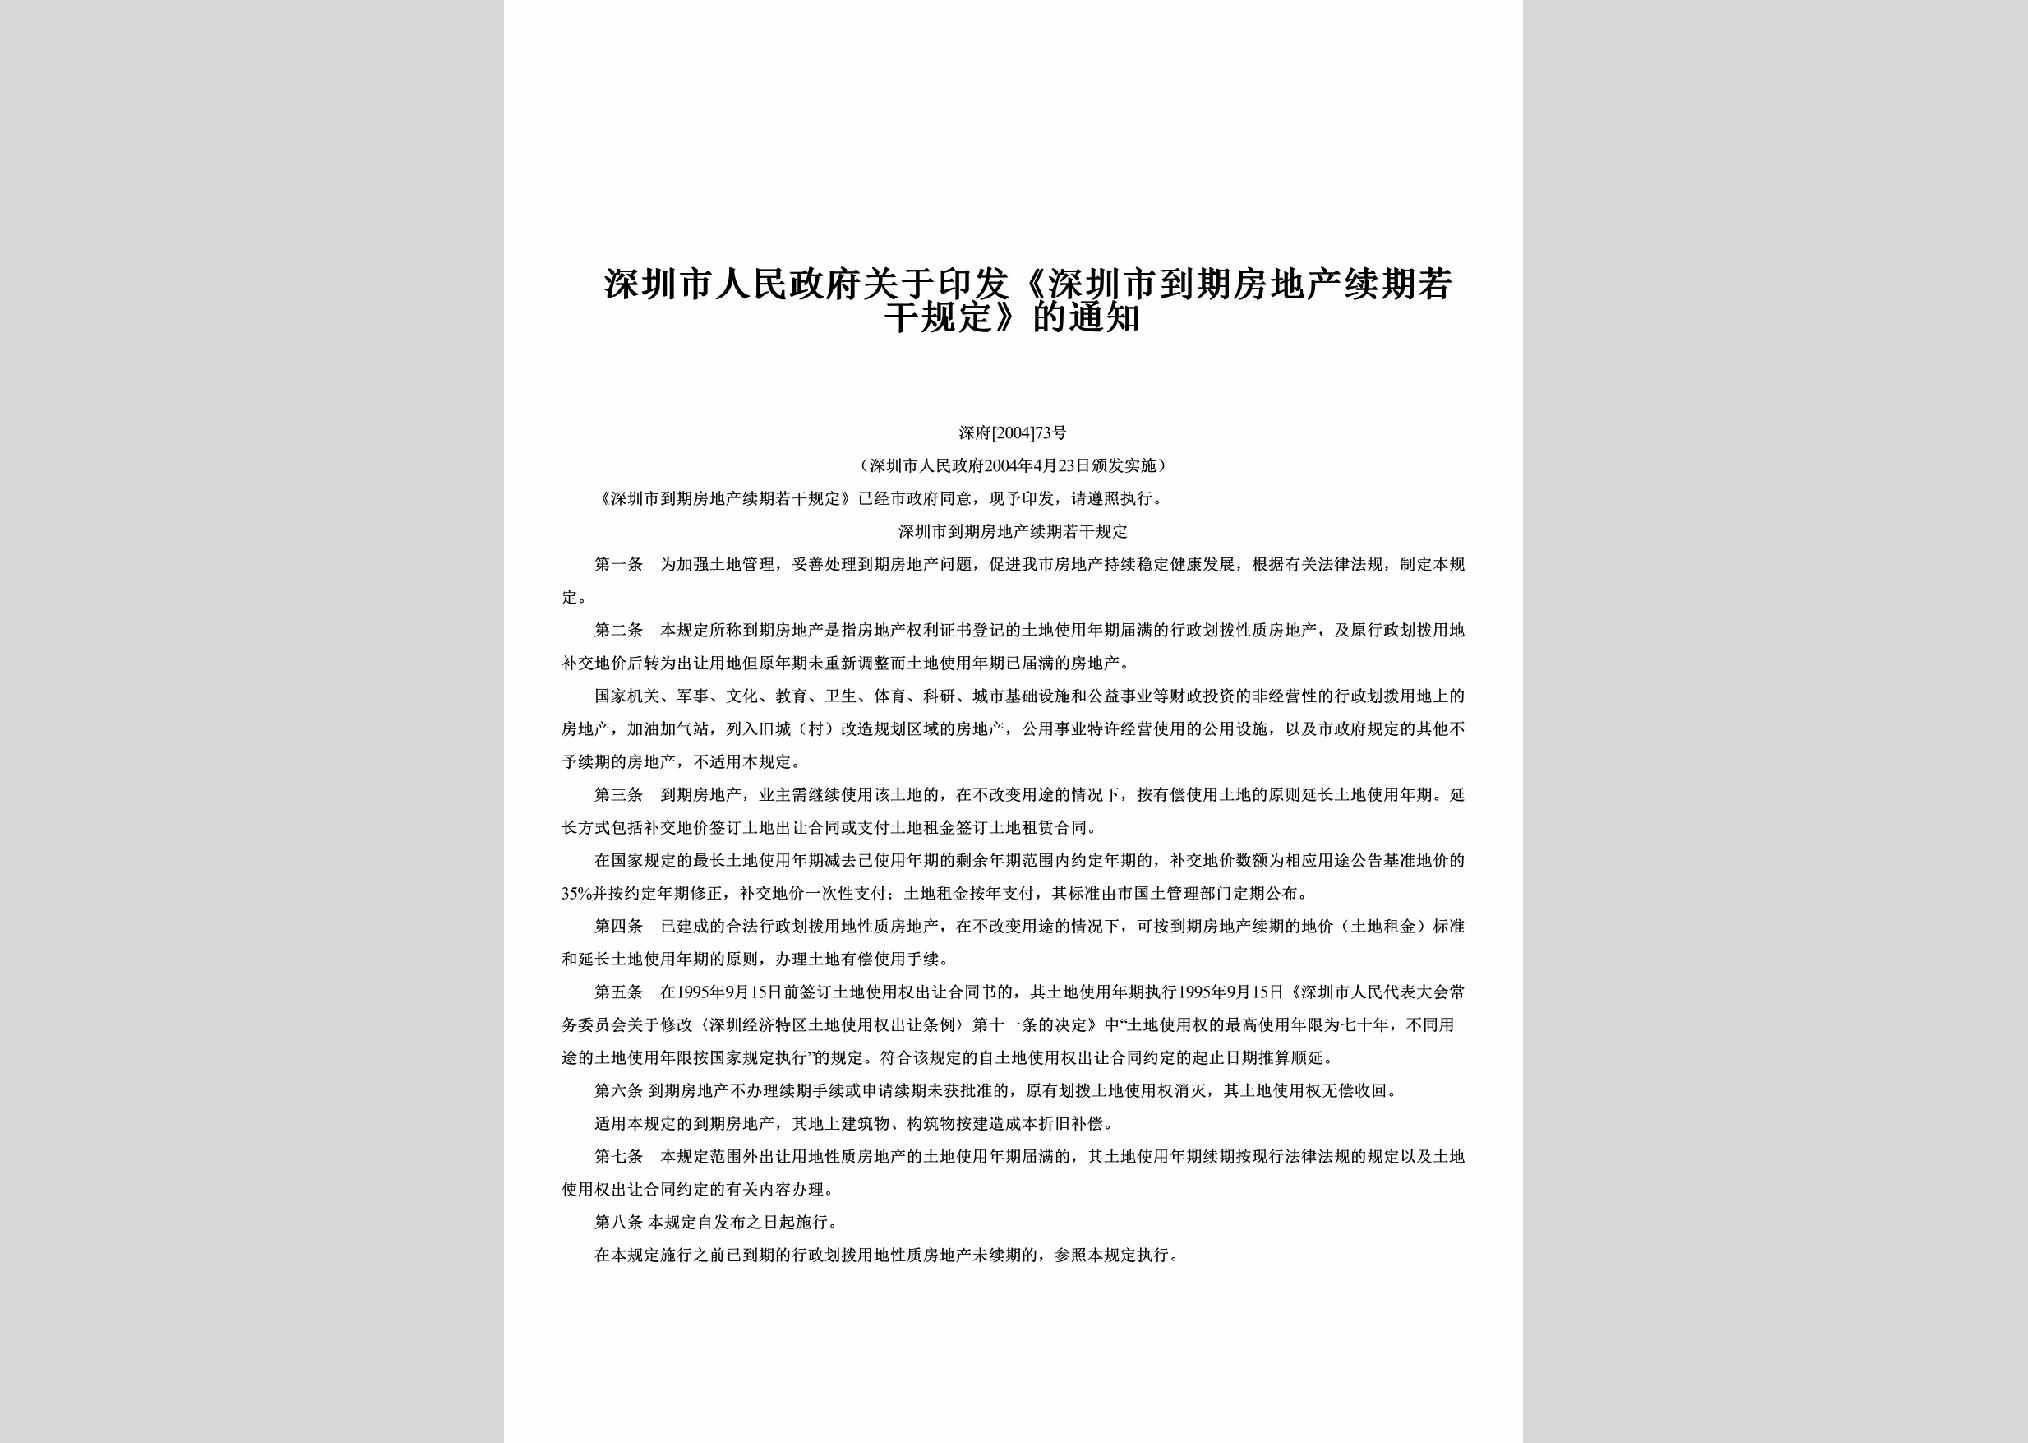 深府[2004]73号：关于印发《深圳市到期房地产续期若干规定》的通知